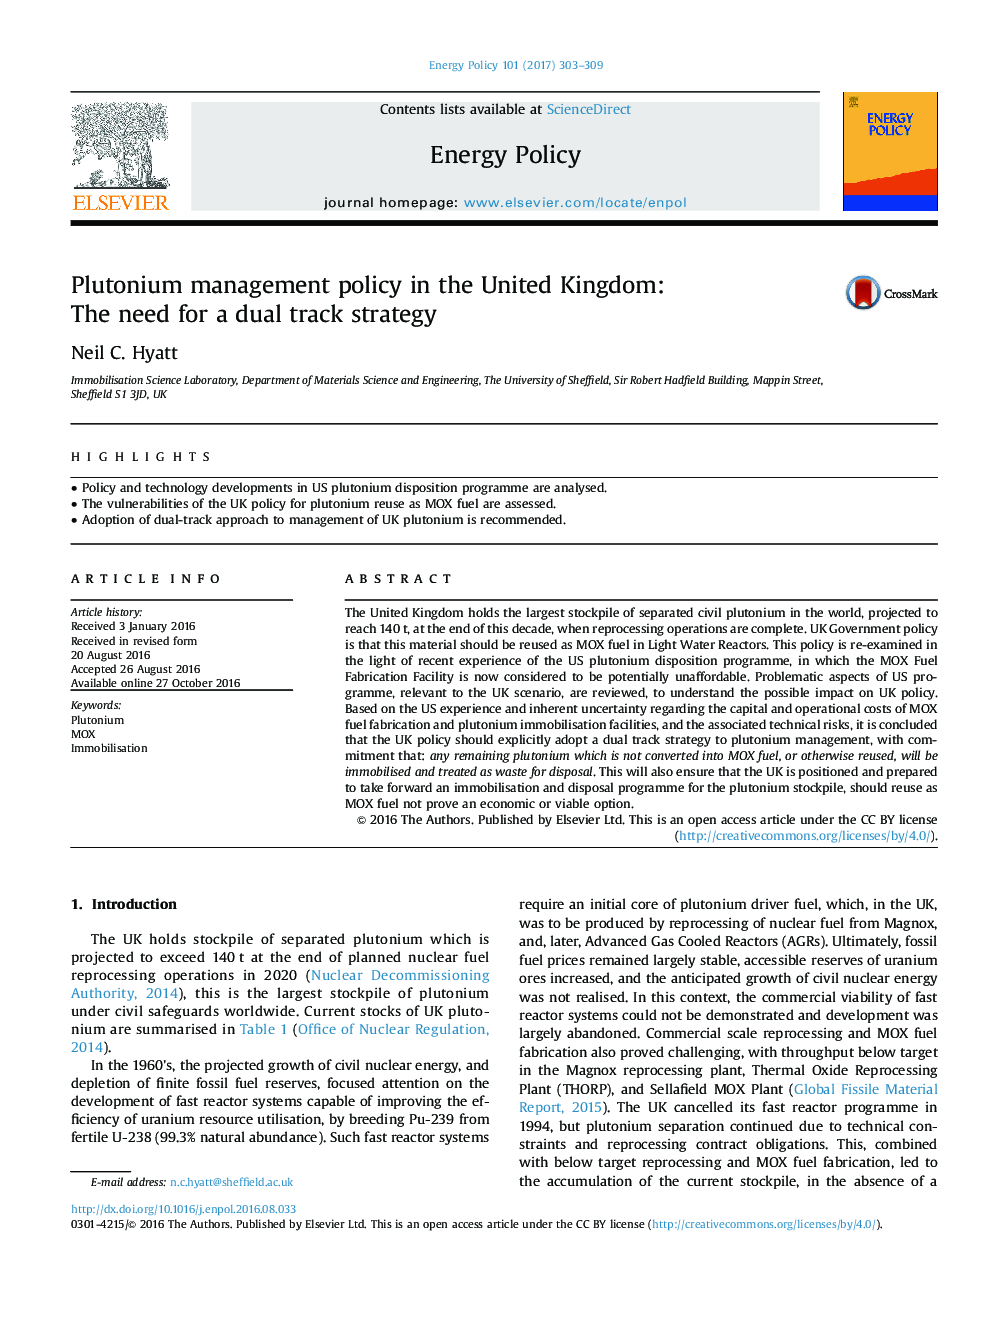 سیاست مدیریت پلوتونیوم در انگلستان: نیاز به یک راهبرد دو طرفه 